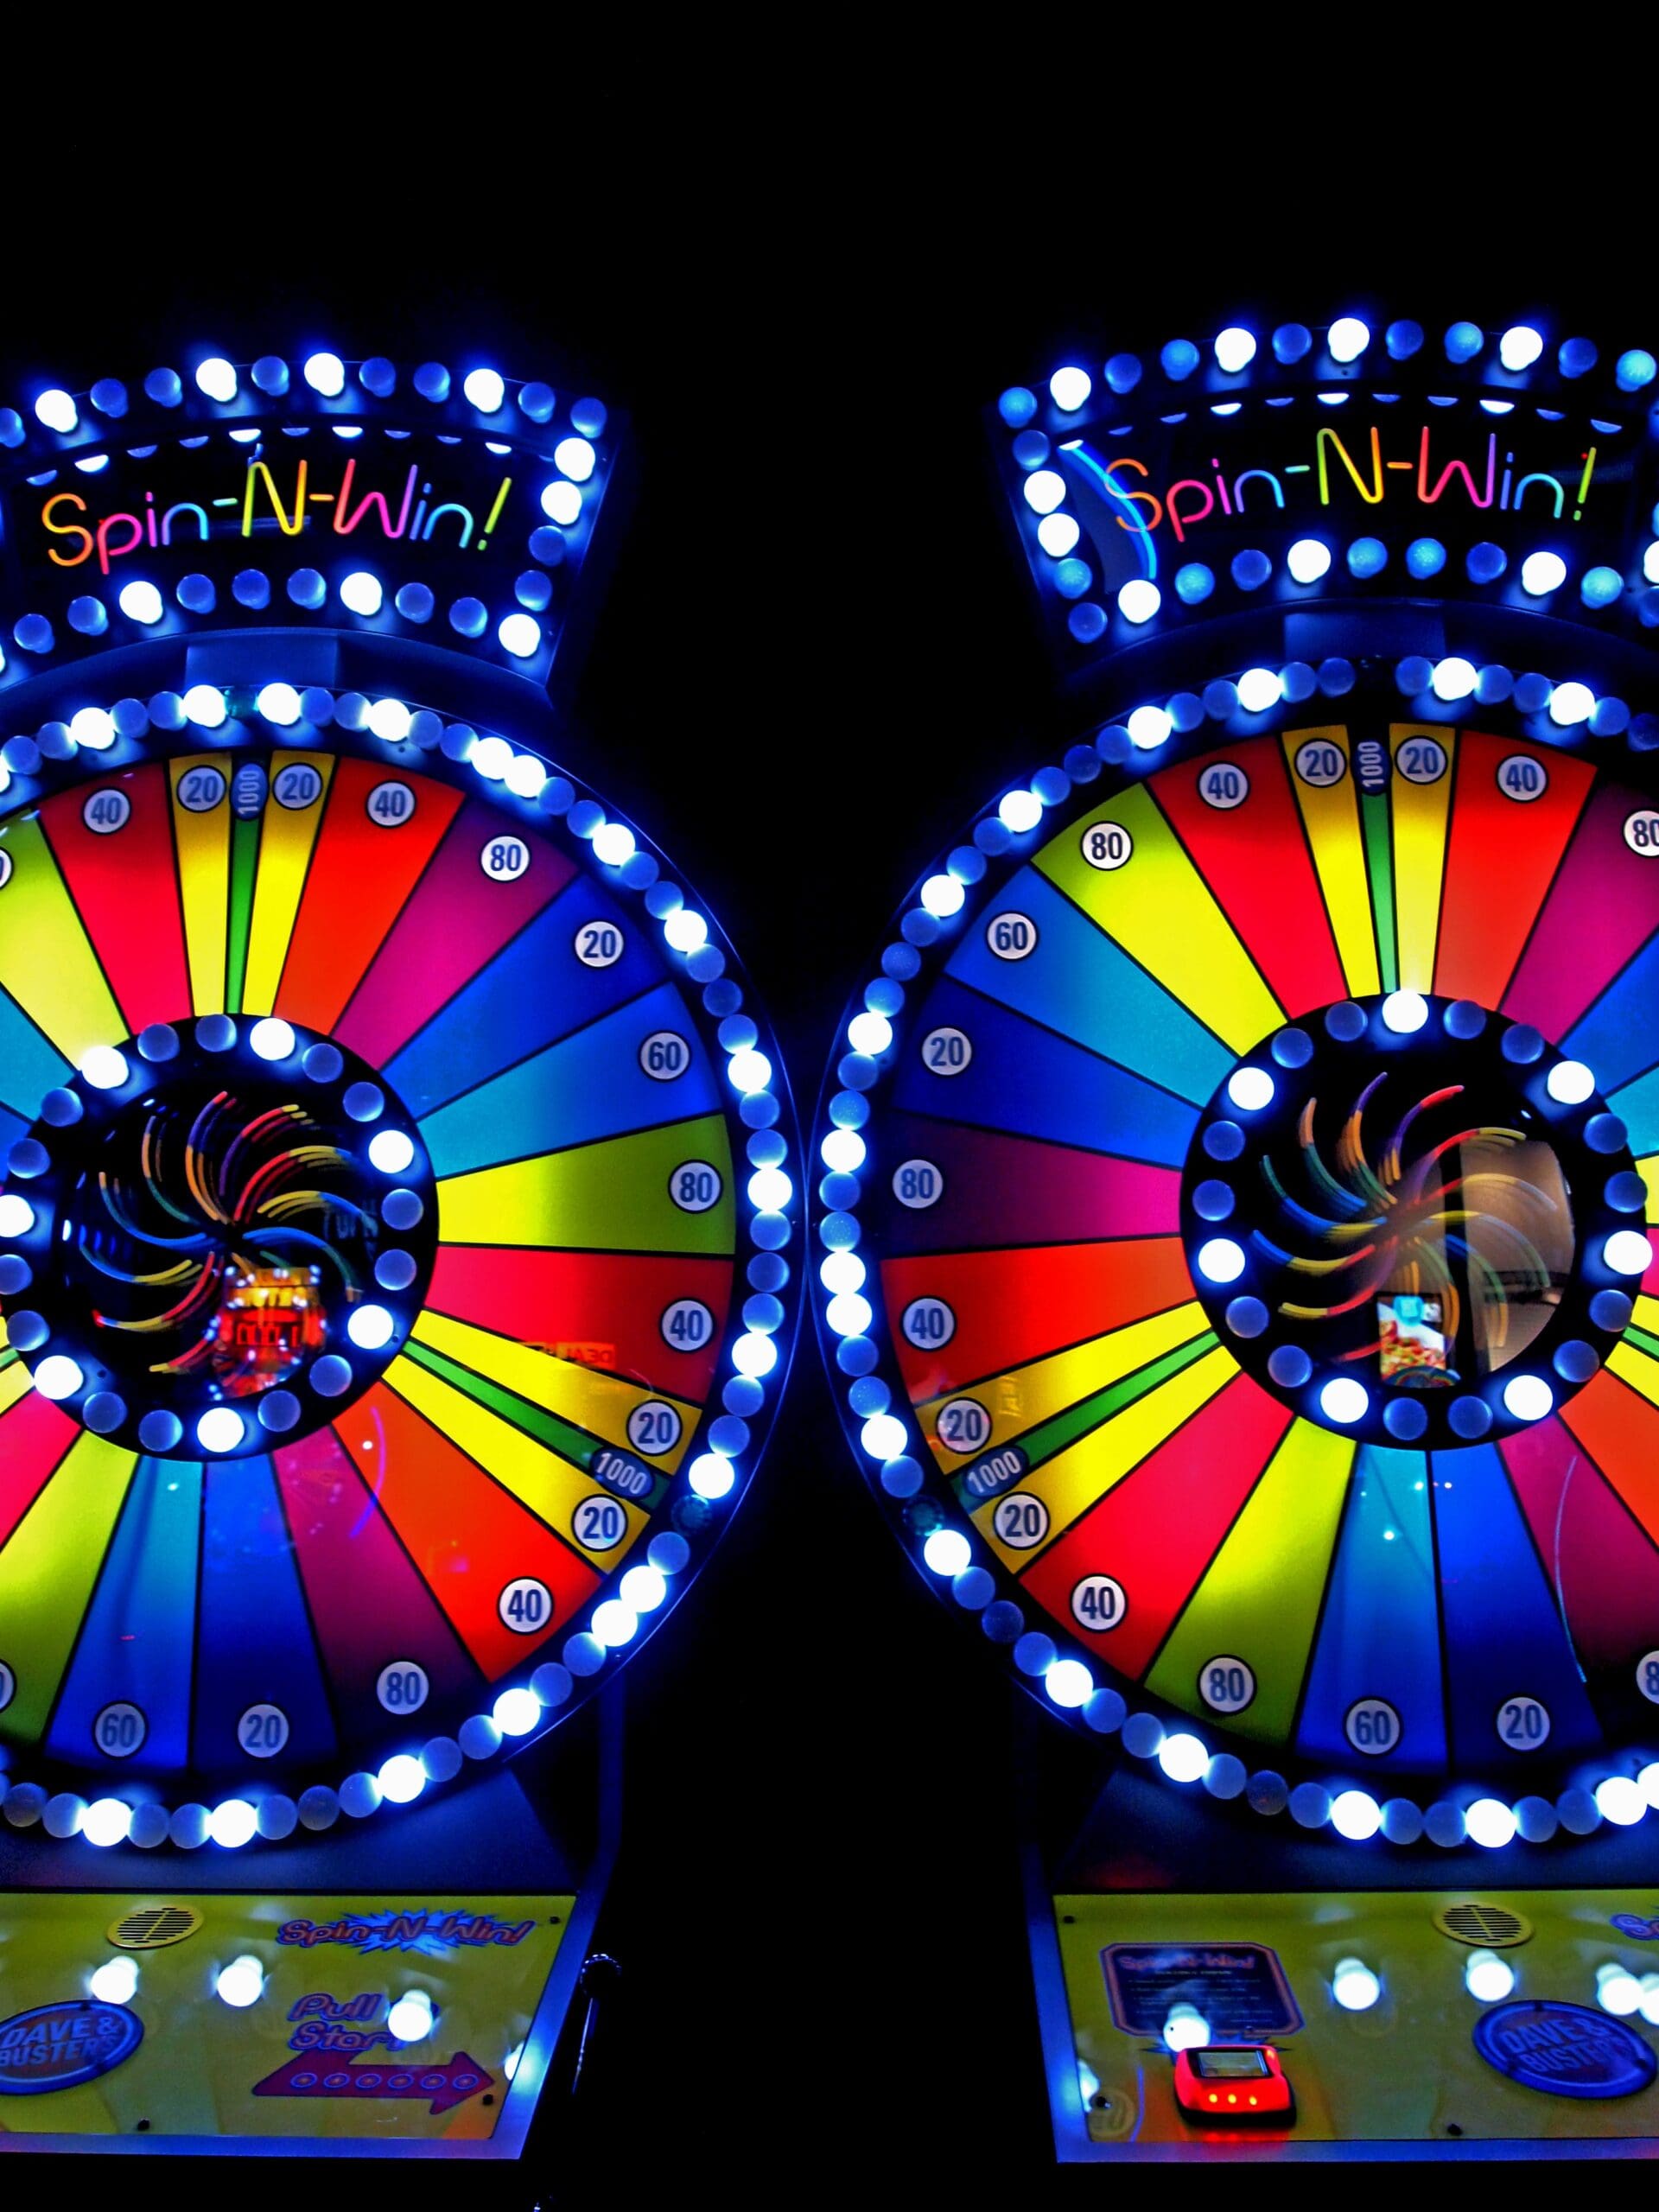 casino slot machine tips and tricks